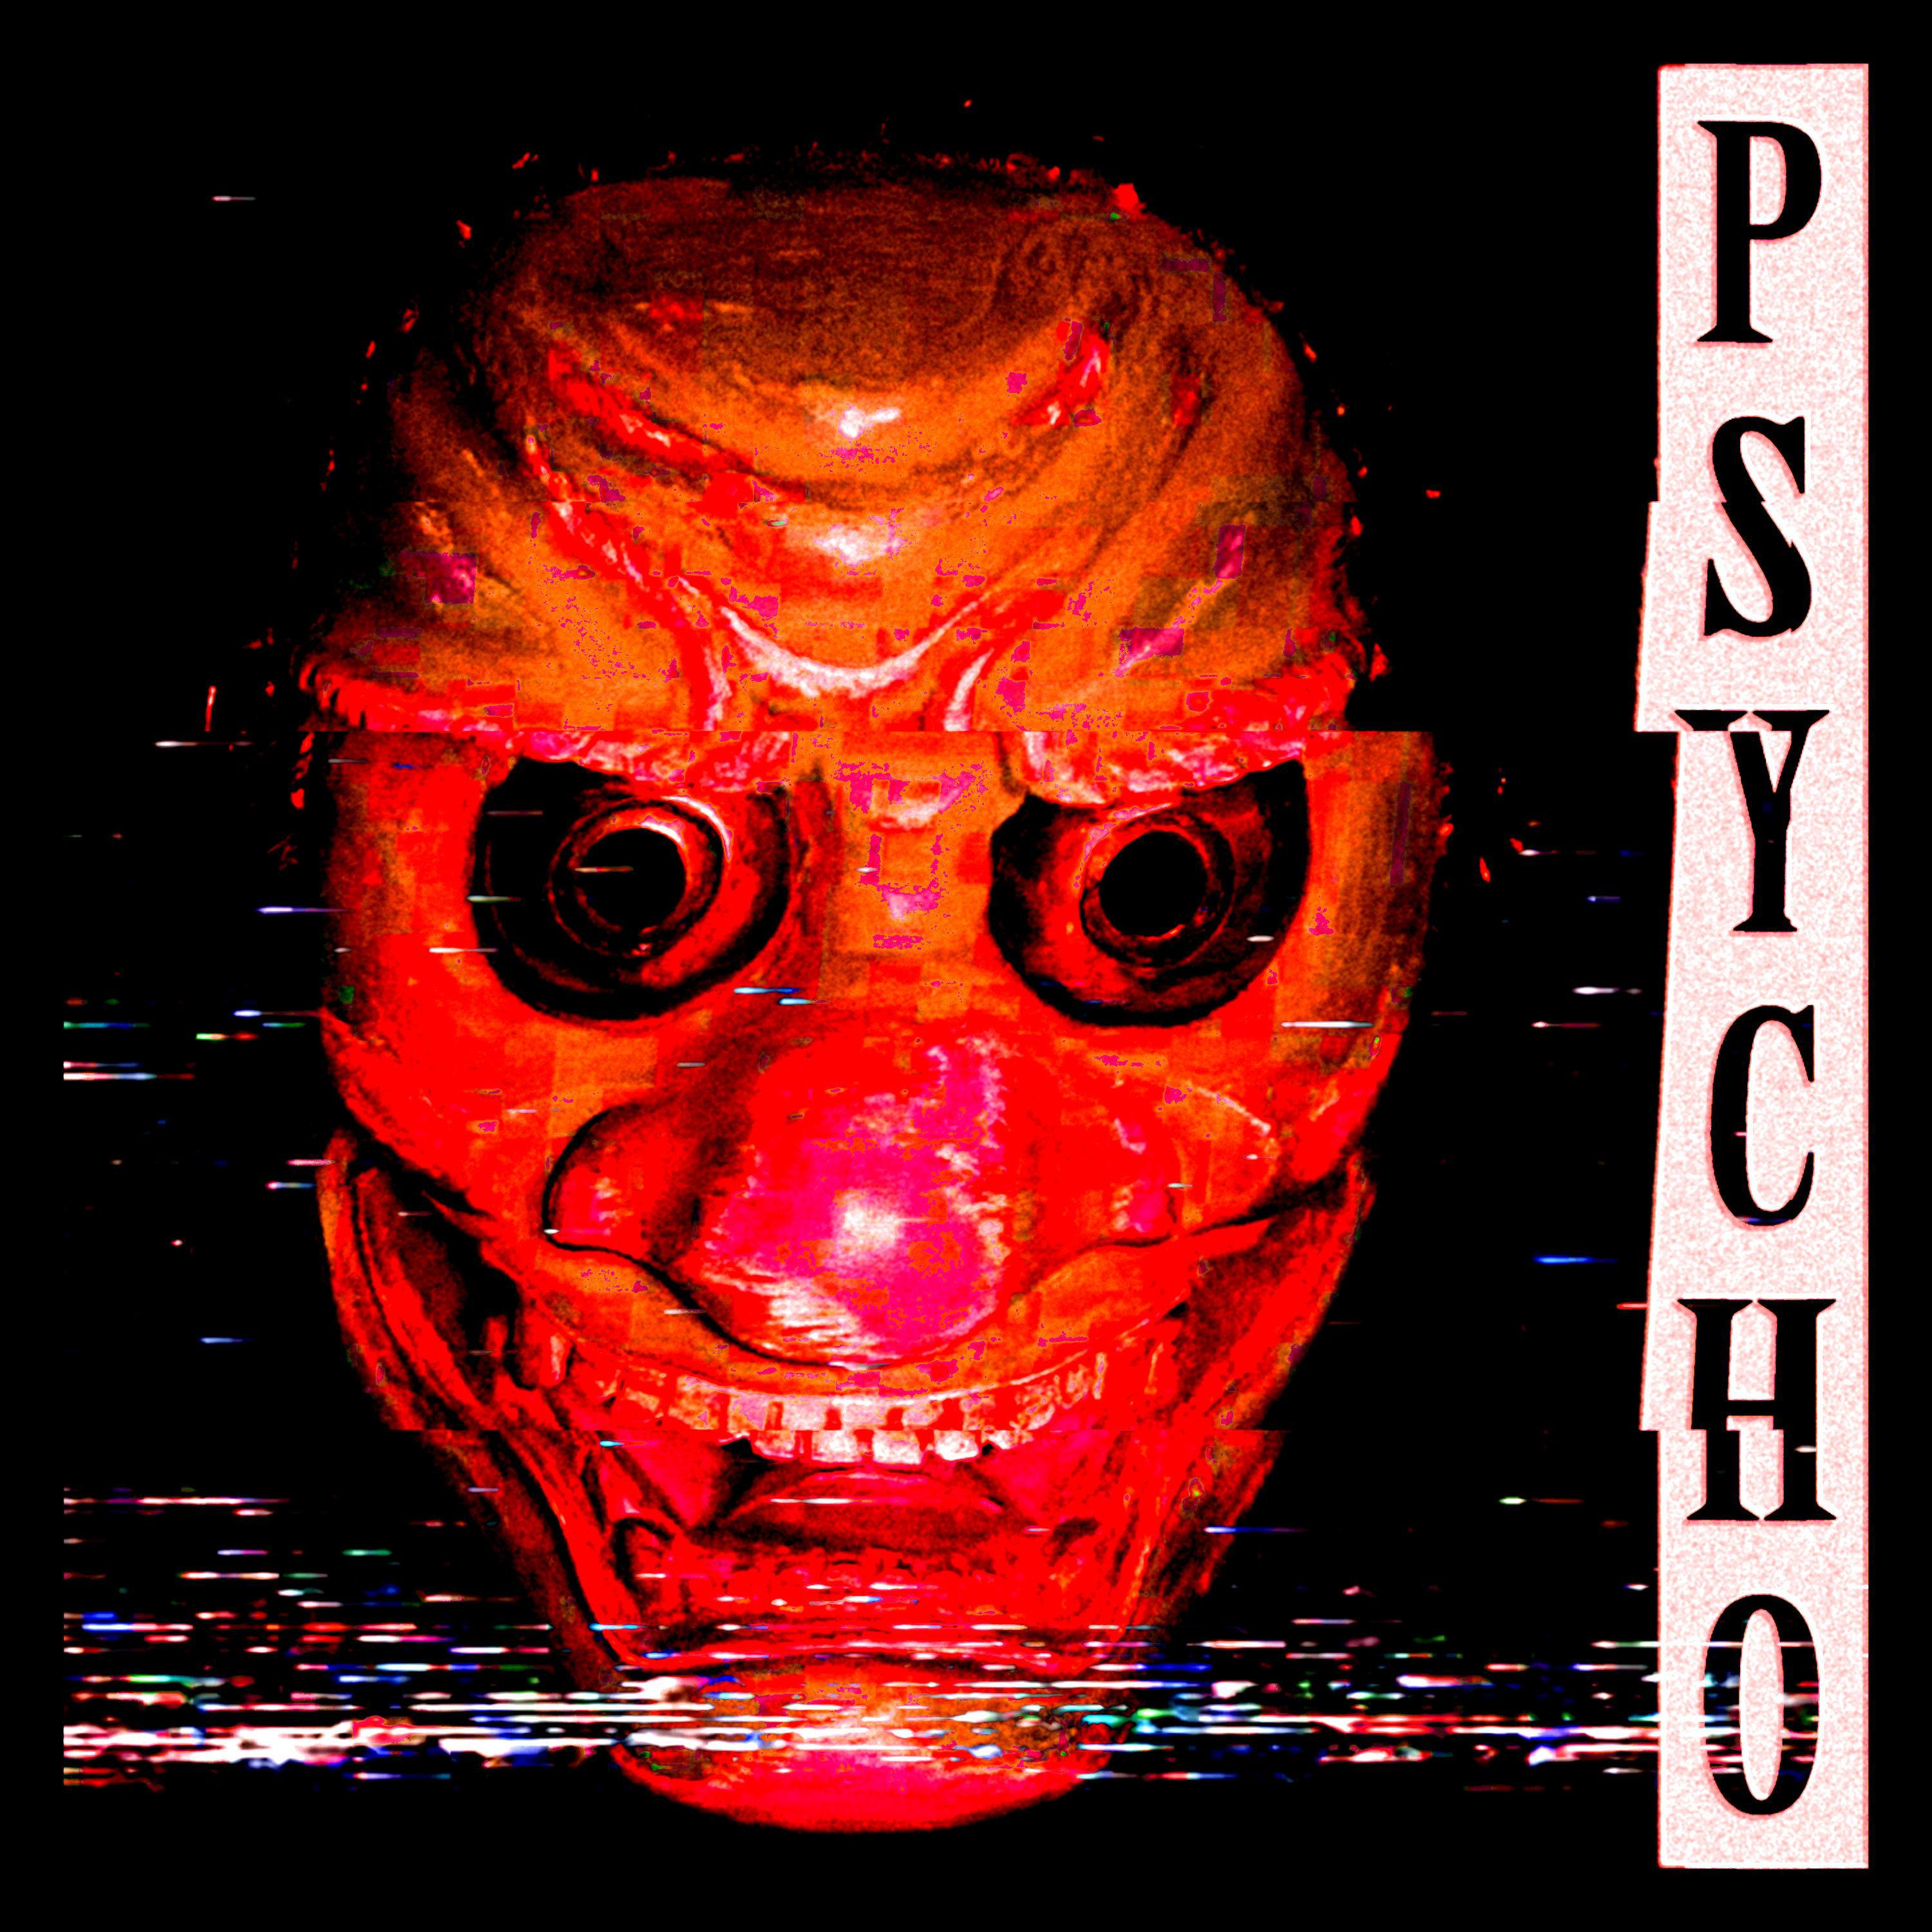 KSLV Noh - Psycho (Sped up)